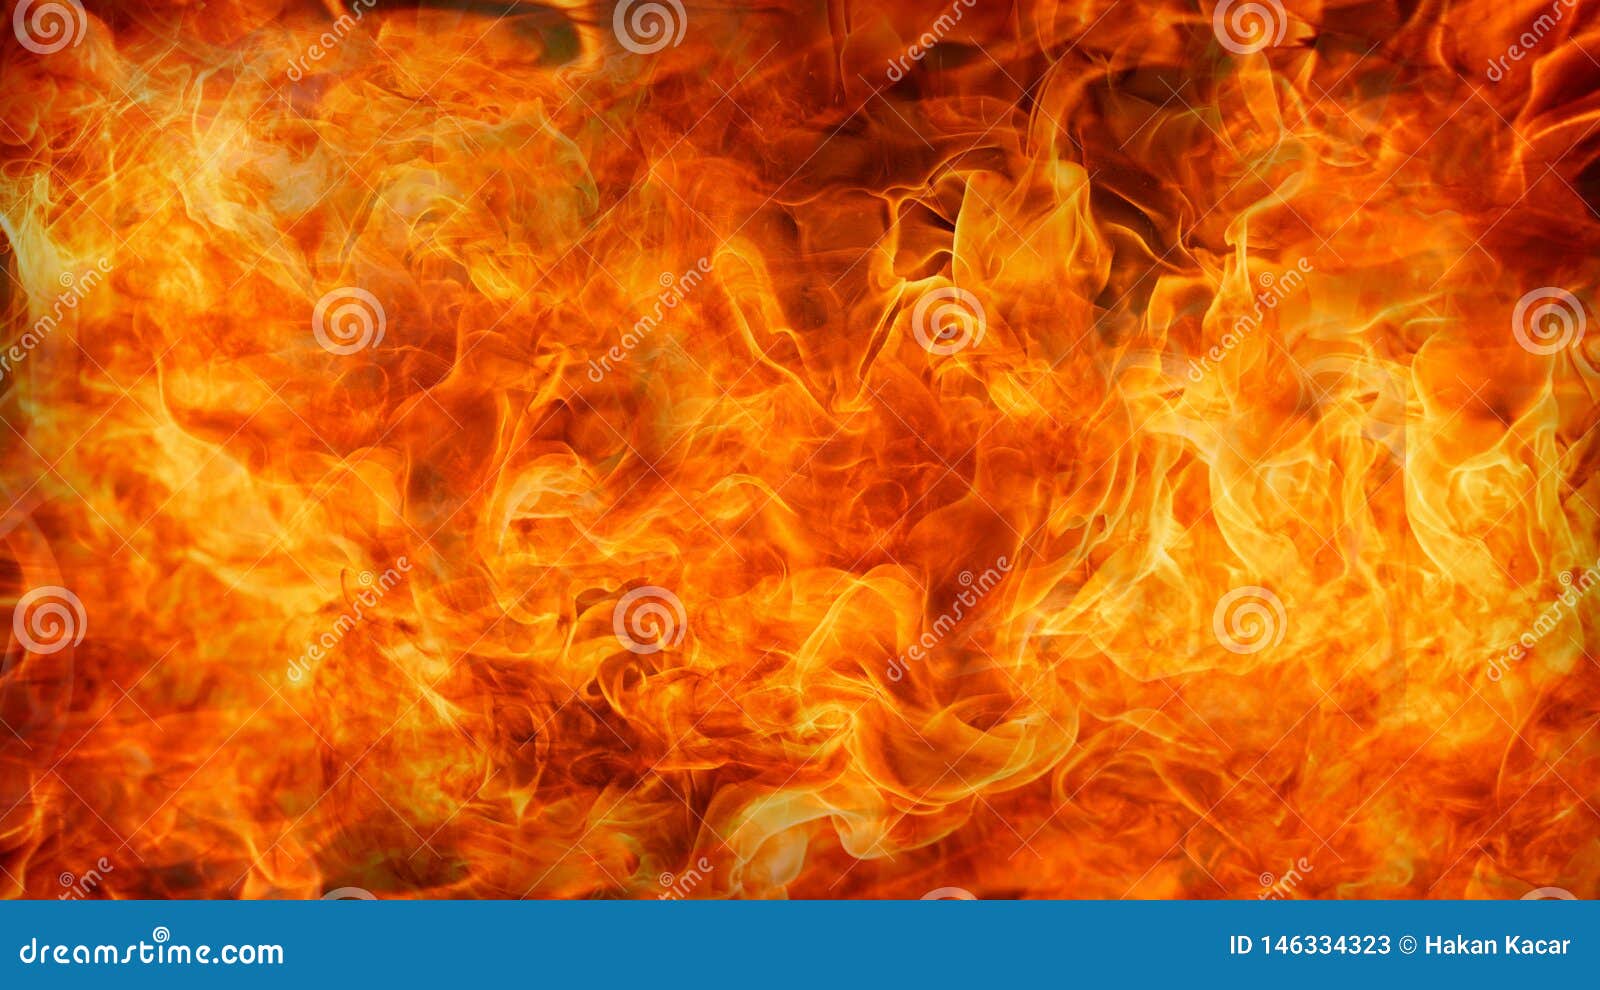 Nền màu đỏ cam đậm nung cháy với lửa và ngọn lửa sẽ đem lại cho bạn không khí sôi động, nóng bỏng và mạnh mẽ. Sắc đỏ cam đậm mang lại sự táo bạo, còn lửa và ngọn lửa lại thể hiện rất rõ ràng sự nhiệt thành, tình yêu đam mê. Xem ngay để trải nghiệm sự kết hợp độc đáo này.